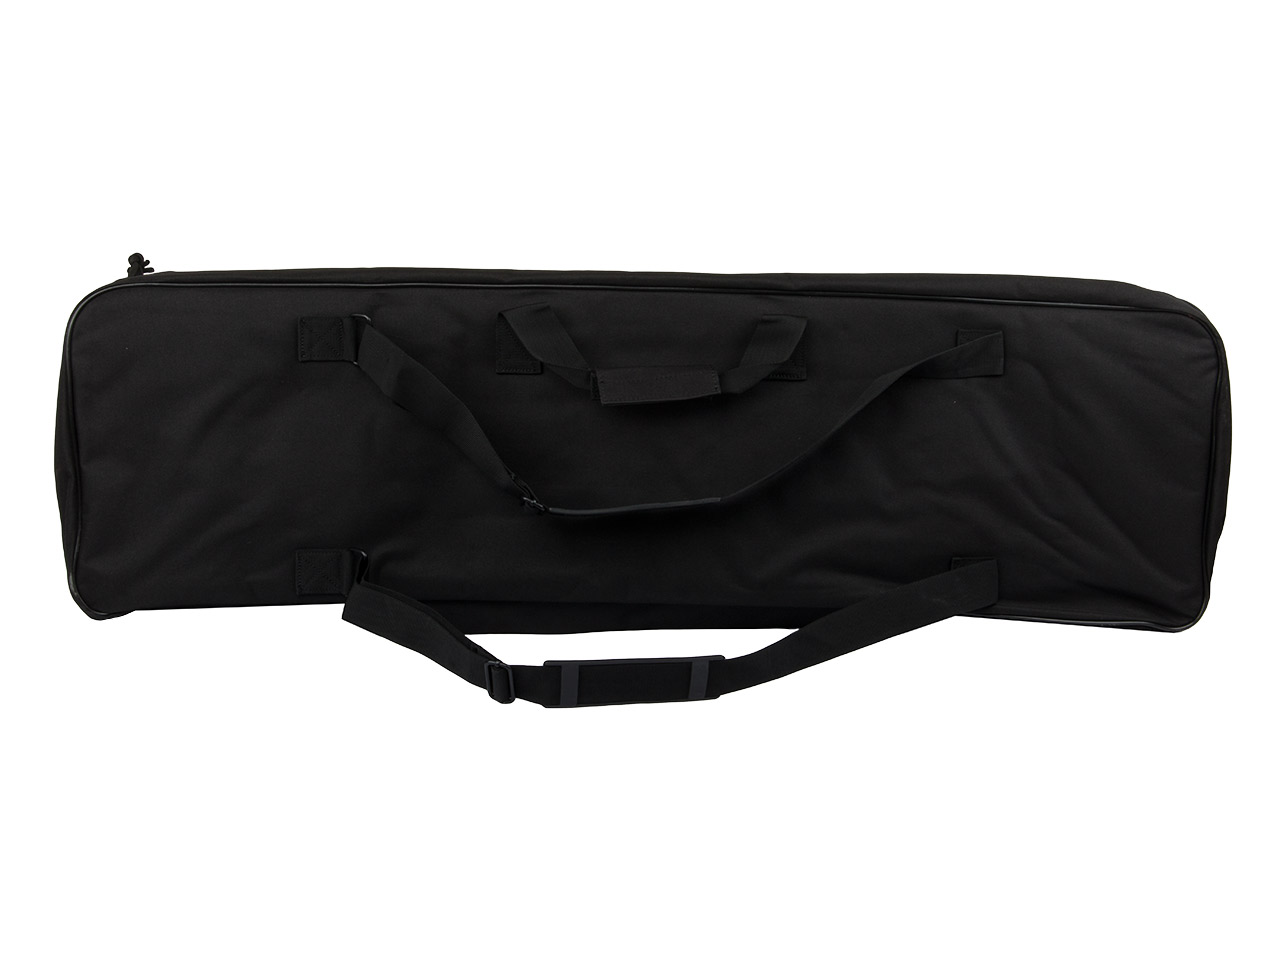 Gewehrfutteral Gewehrtasche Coptex 95 x 25 cm abschließbar Nylon 2 Außentaschen Trageriemen Rucksackgurt schwarz